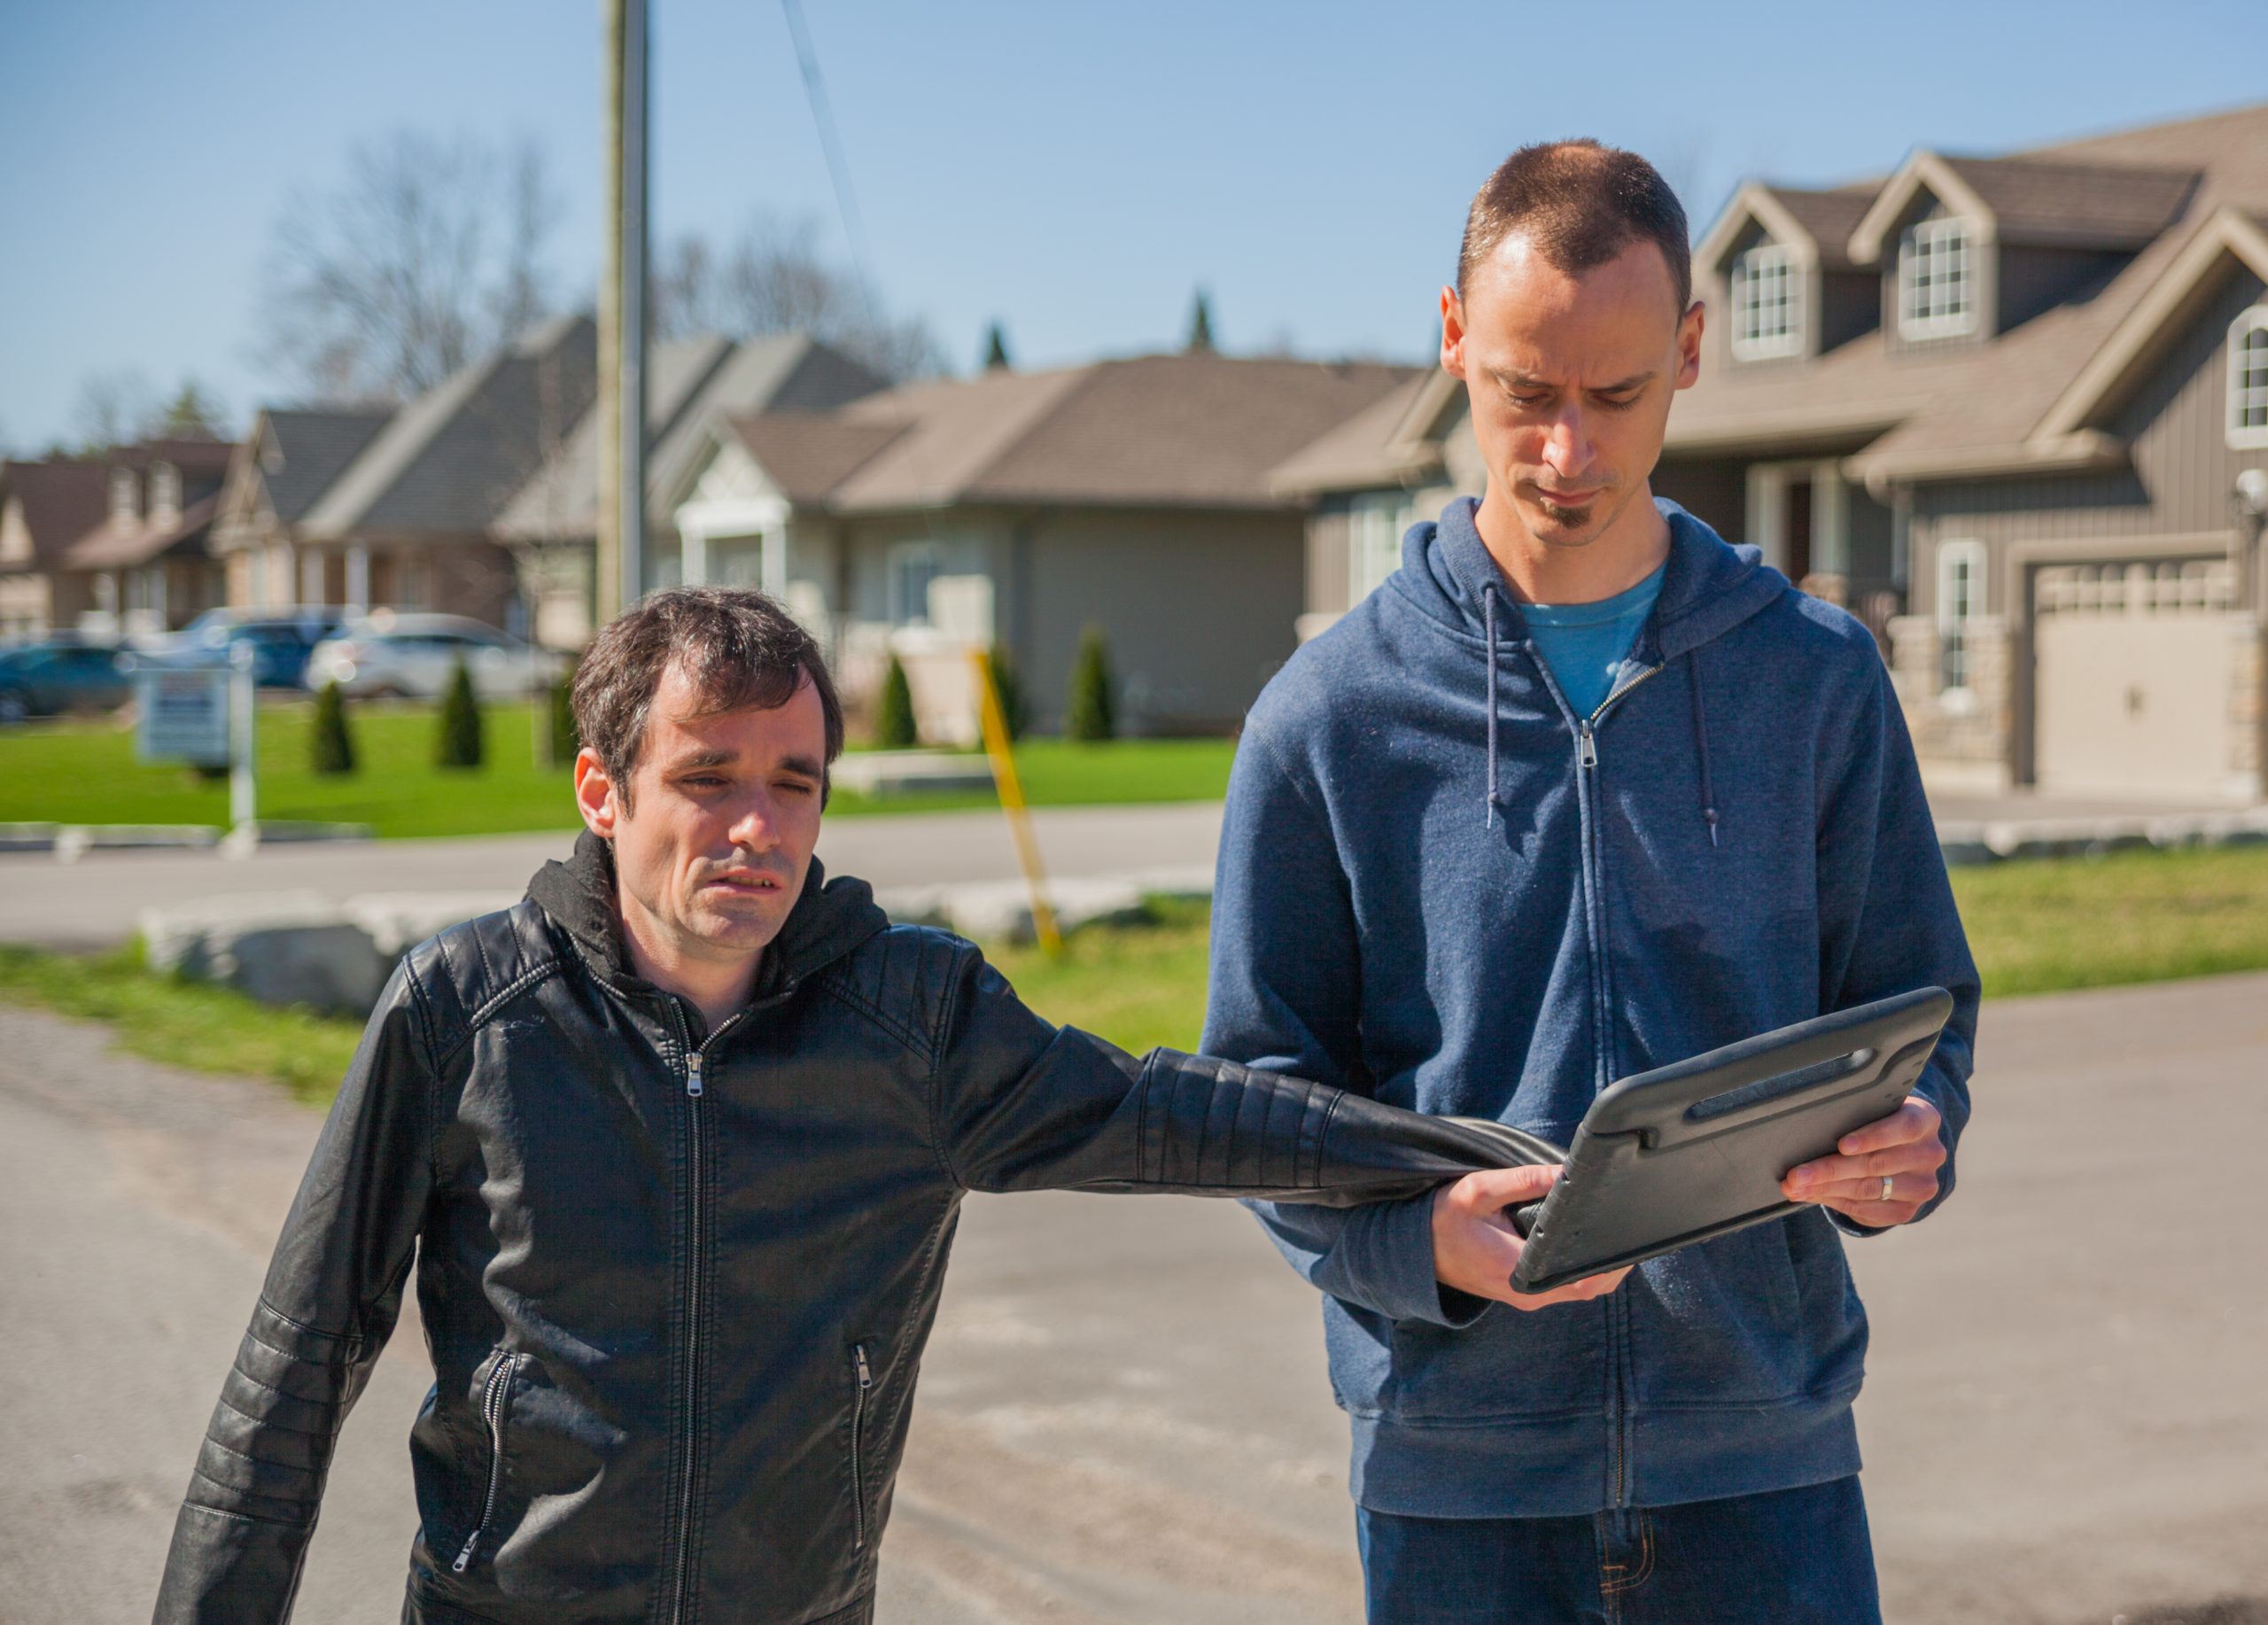 L’interprète tactile communique avec un homme à l’aide d’un iPad. Ils se promènent dehors dans un quartier résidentiel.